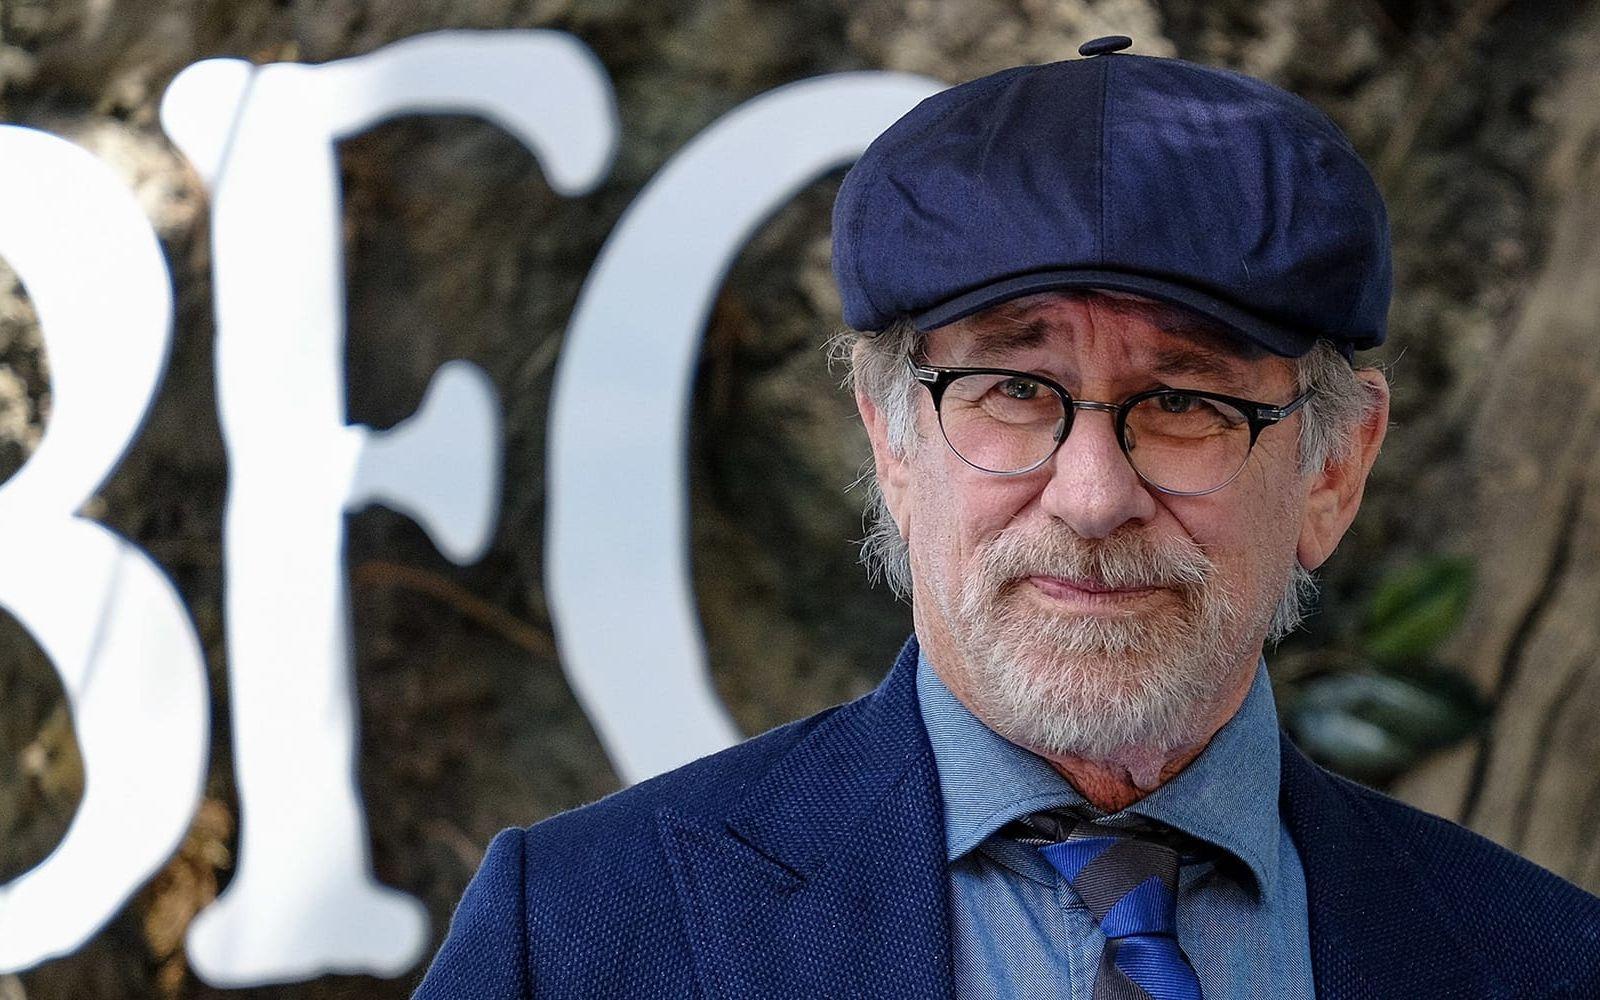 <strong>NU:</strong> Steven Spielberg anses vara en av filmhistoriens viktigaste regissörer och producenter. Två gånger har han belönats med en Oscar för bästa regi (Saving Private Ryan och Schindler’s list) och han har hela sexton Oscarsnomineringar på sitt CV. Foto: Stella Pictures